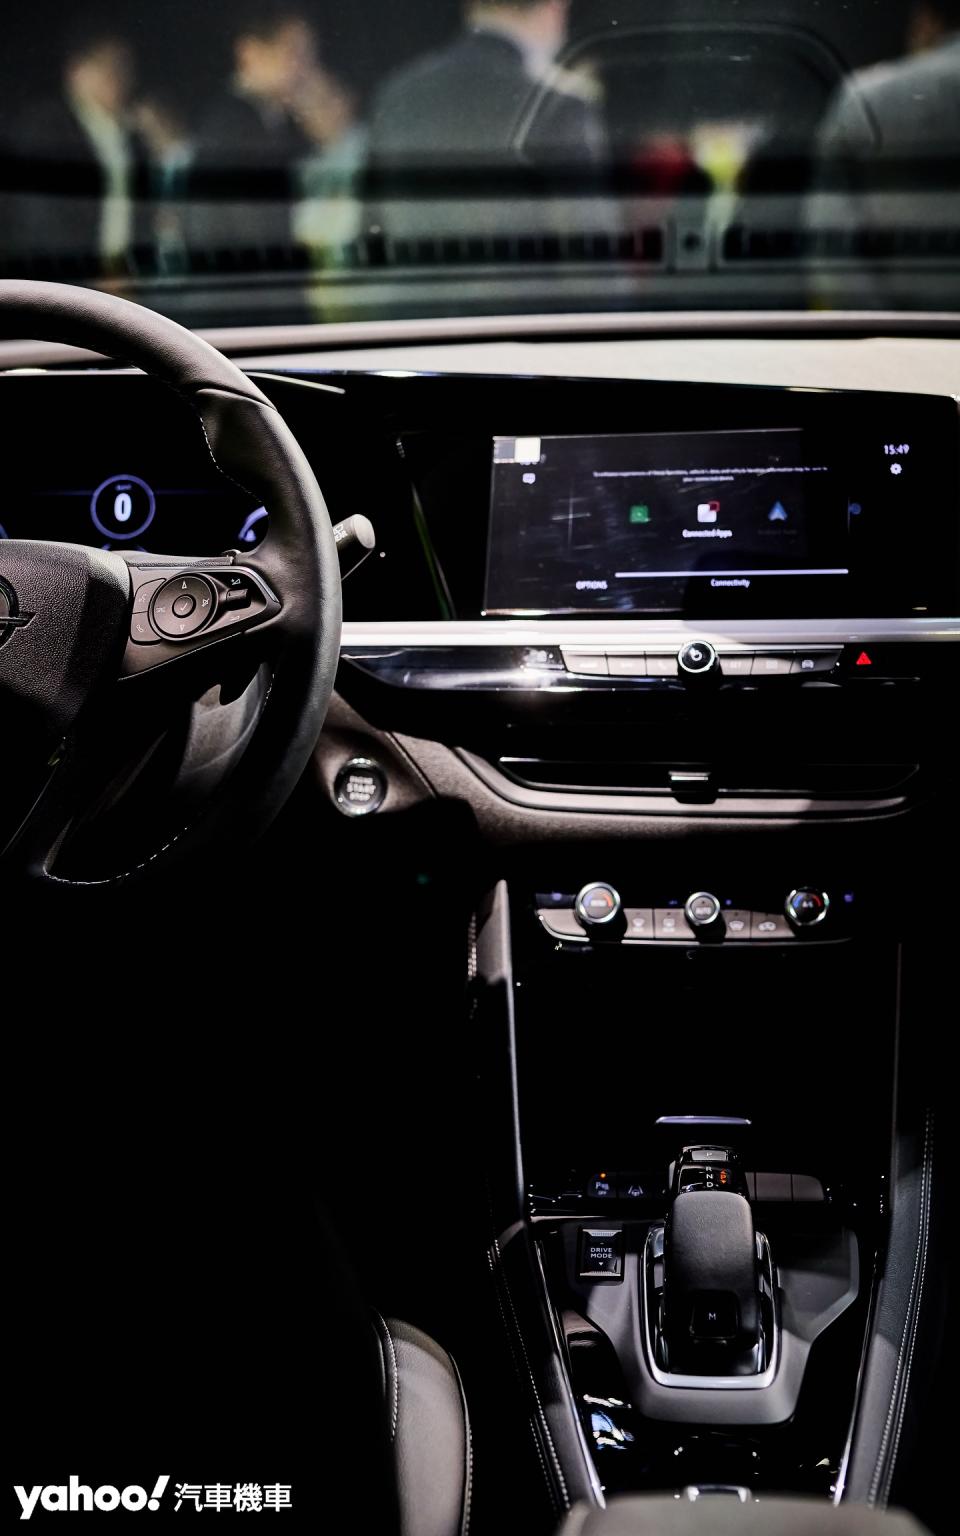 操作介面簡潔且有著一定程度的美觀與屬於Opel的德國設計風格。